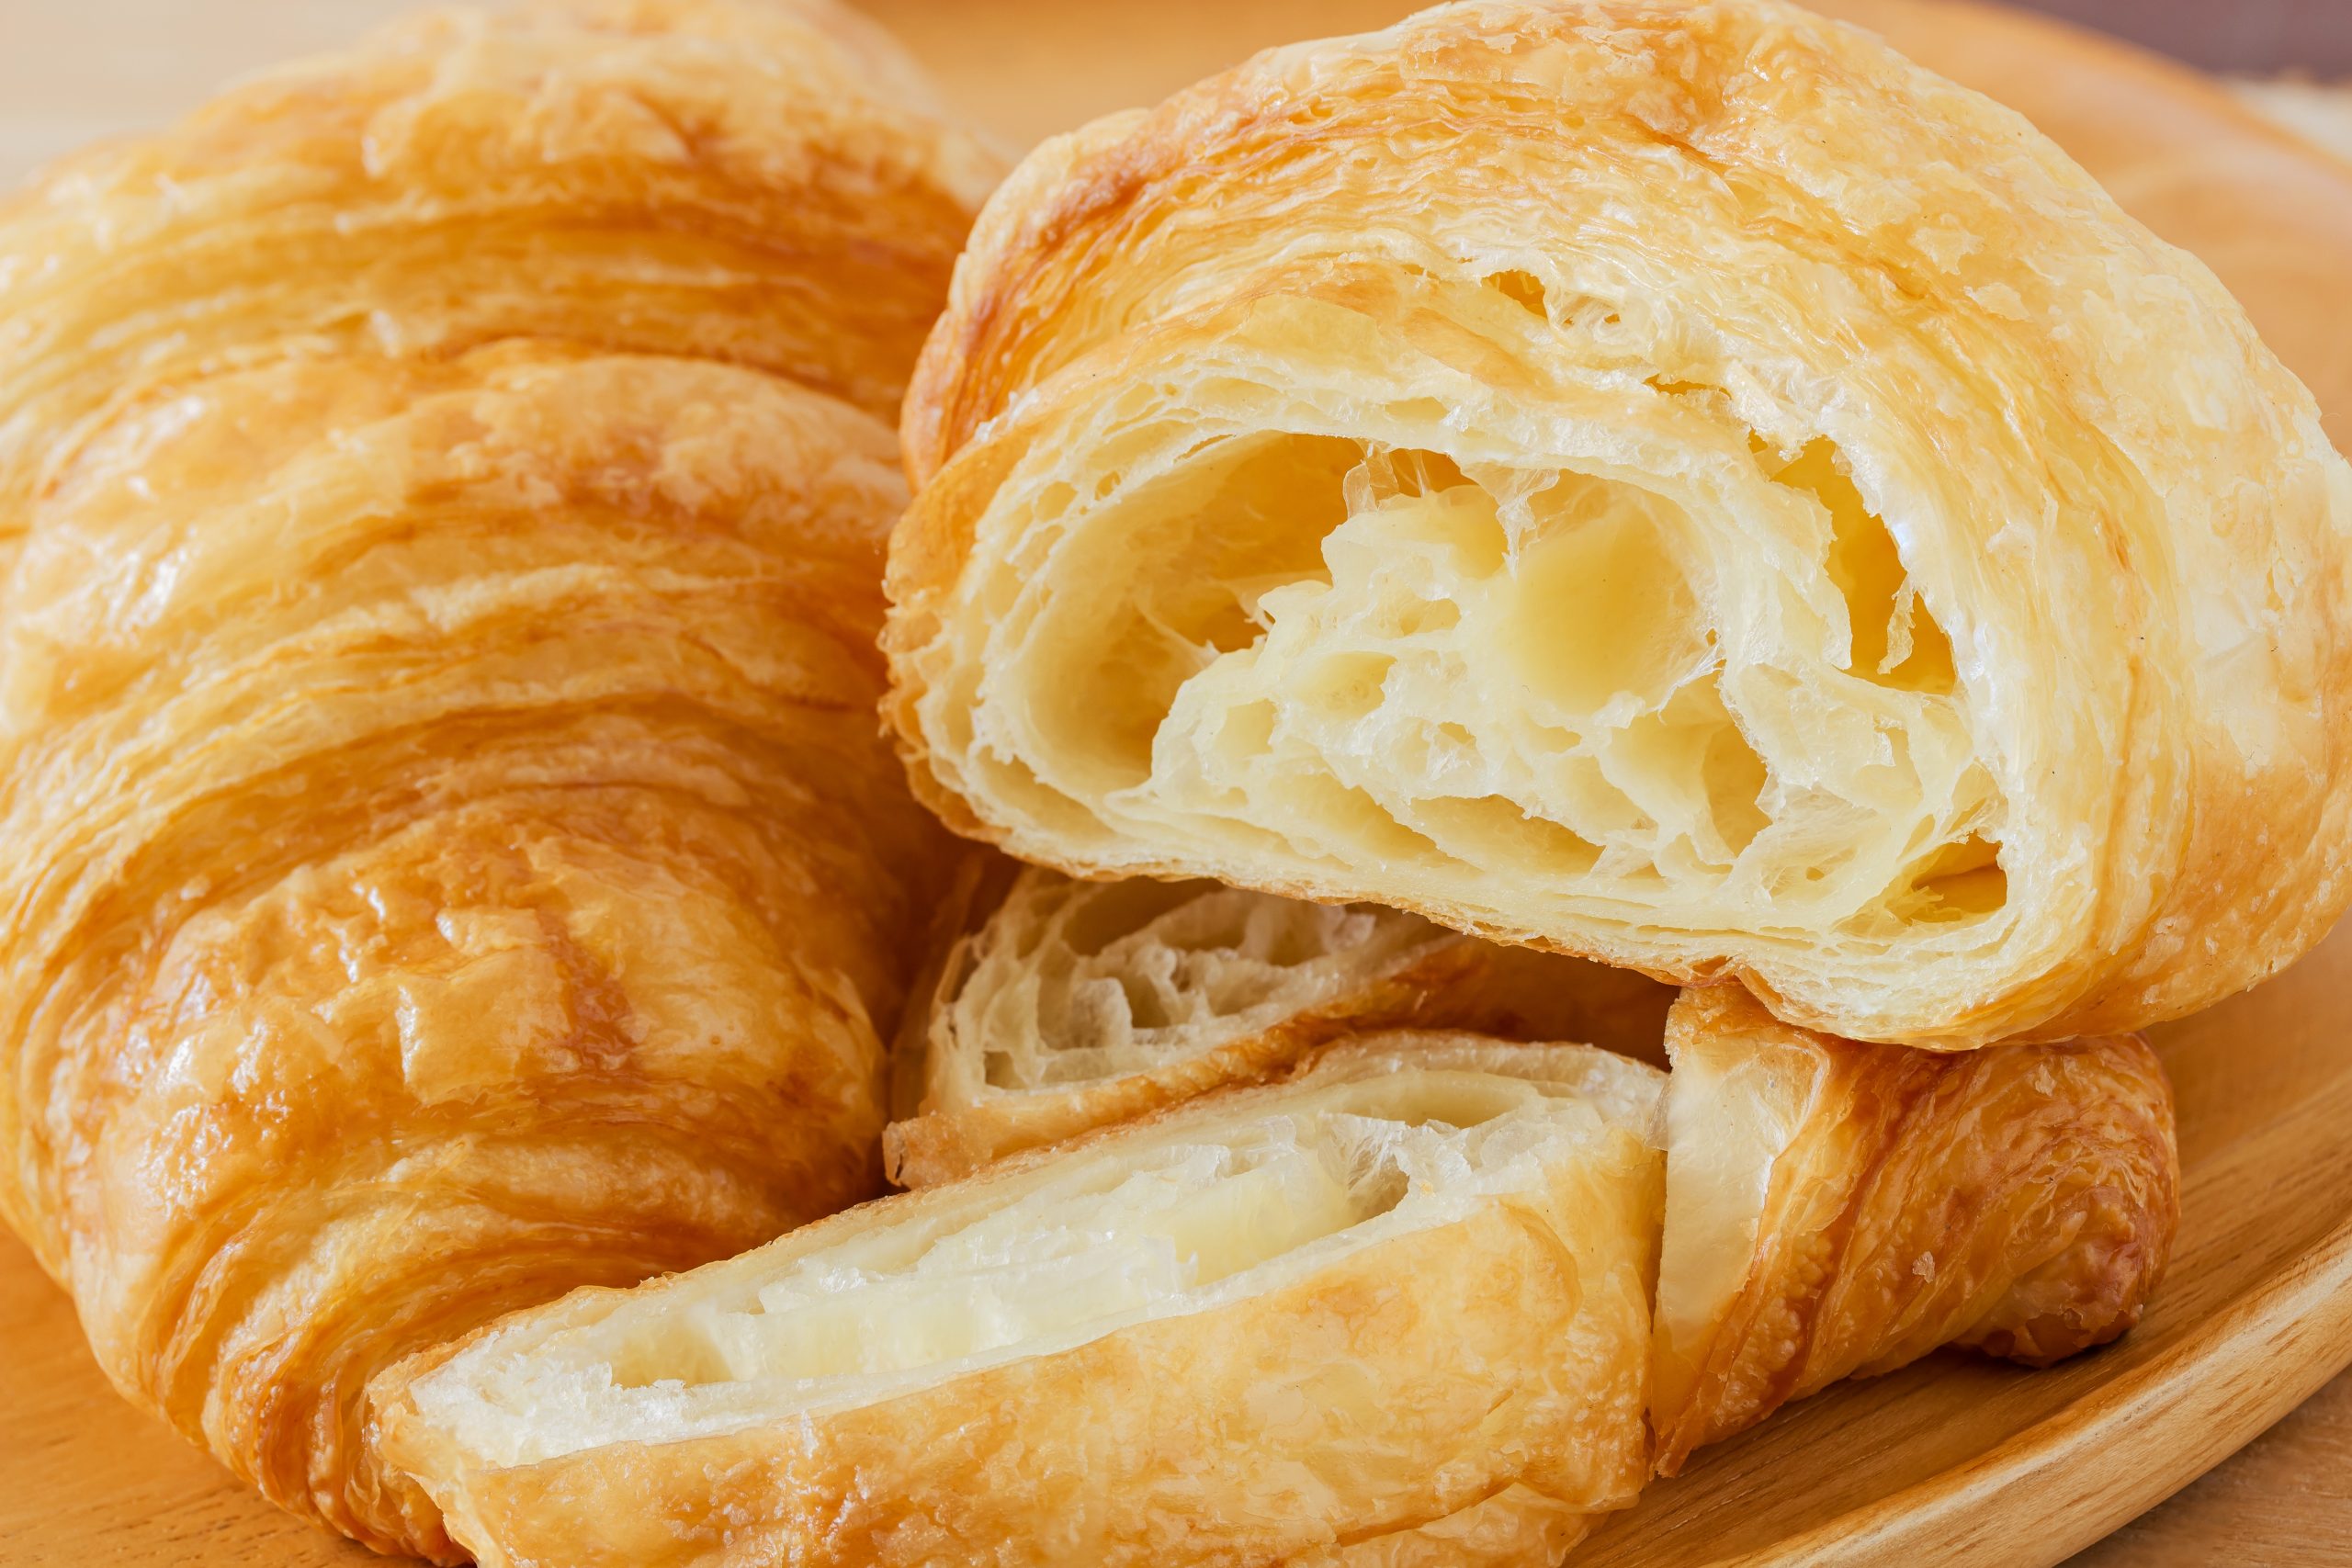 A croissant születése egy osztrák tüzértisztnek, August Zang -nak köszönhető, aki 1838 -ban pékséget alapított Franciaországban.